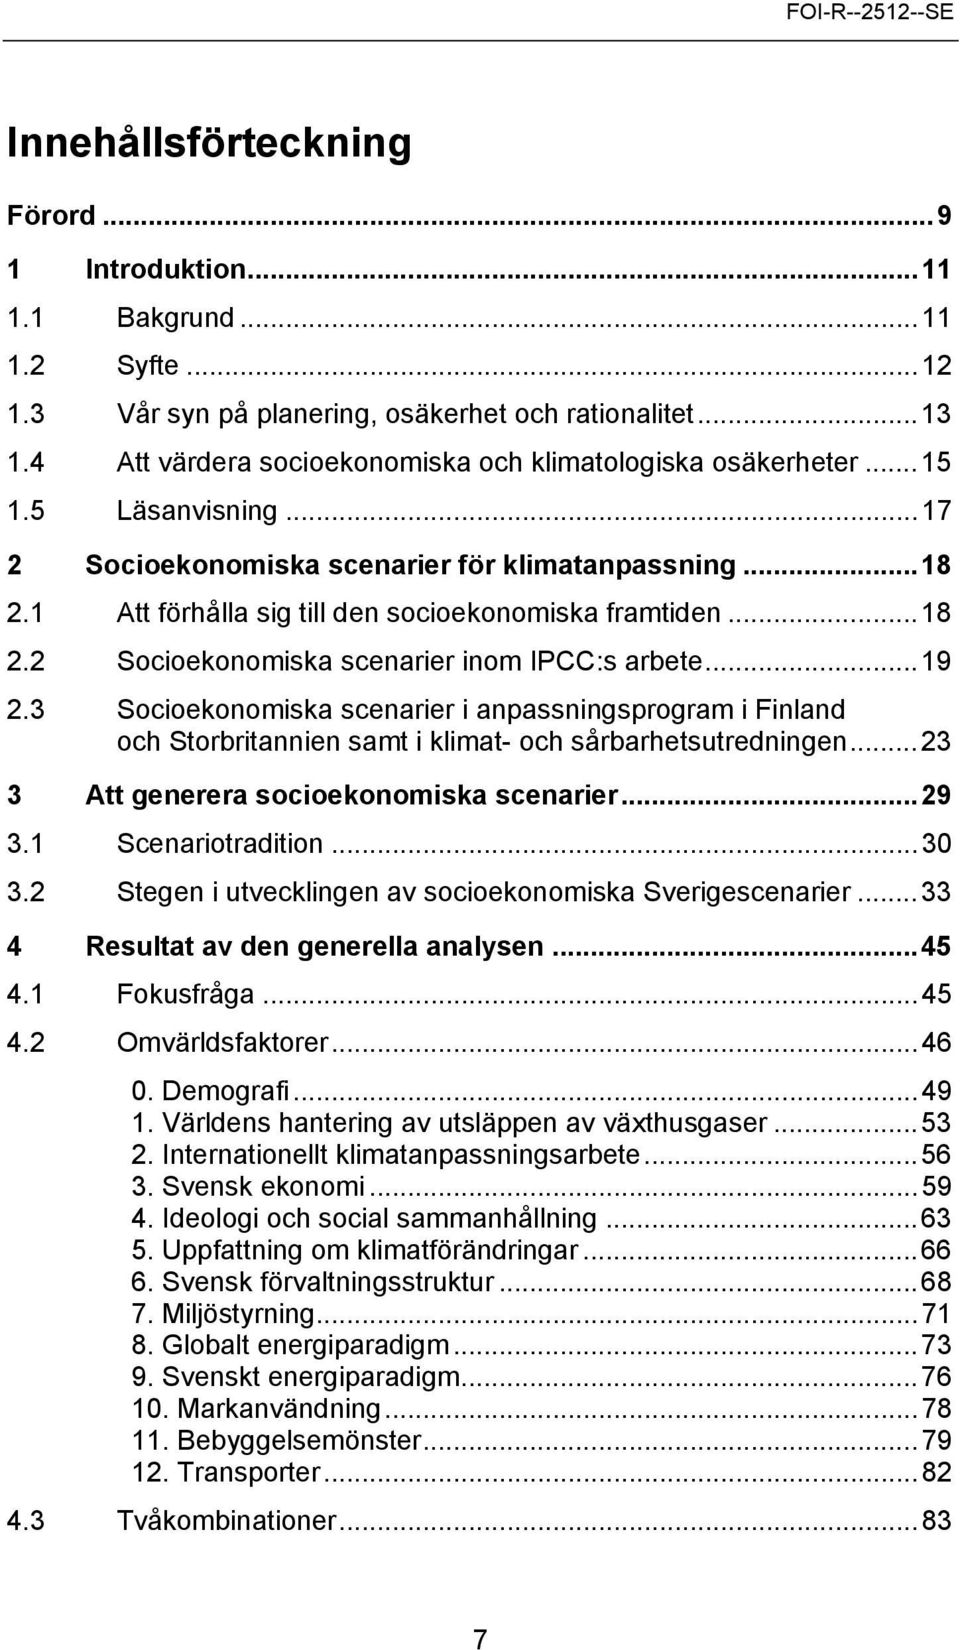 ..18 2.2 Socioekonomiska scenarier inom IPCC:s arbete...19 2.3 Socioekonomiska scenarier i anpassningsprogram i Finland och Storbritannien samt i klimat- och sårbarhetsutredningen.